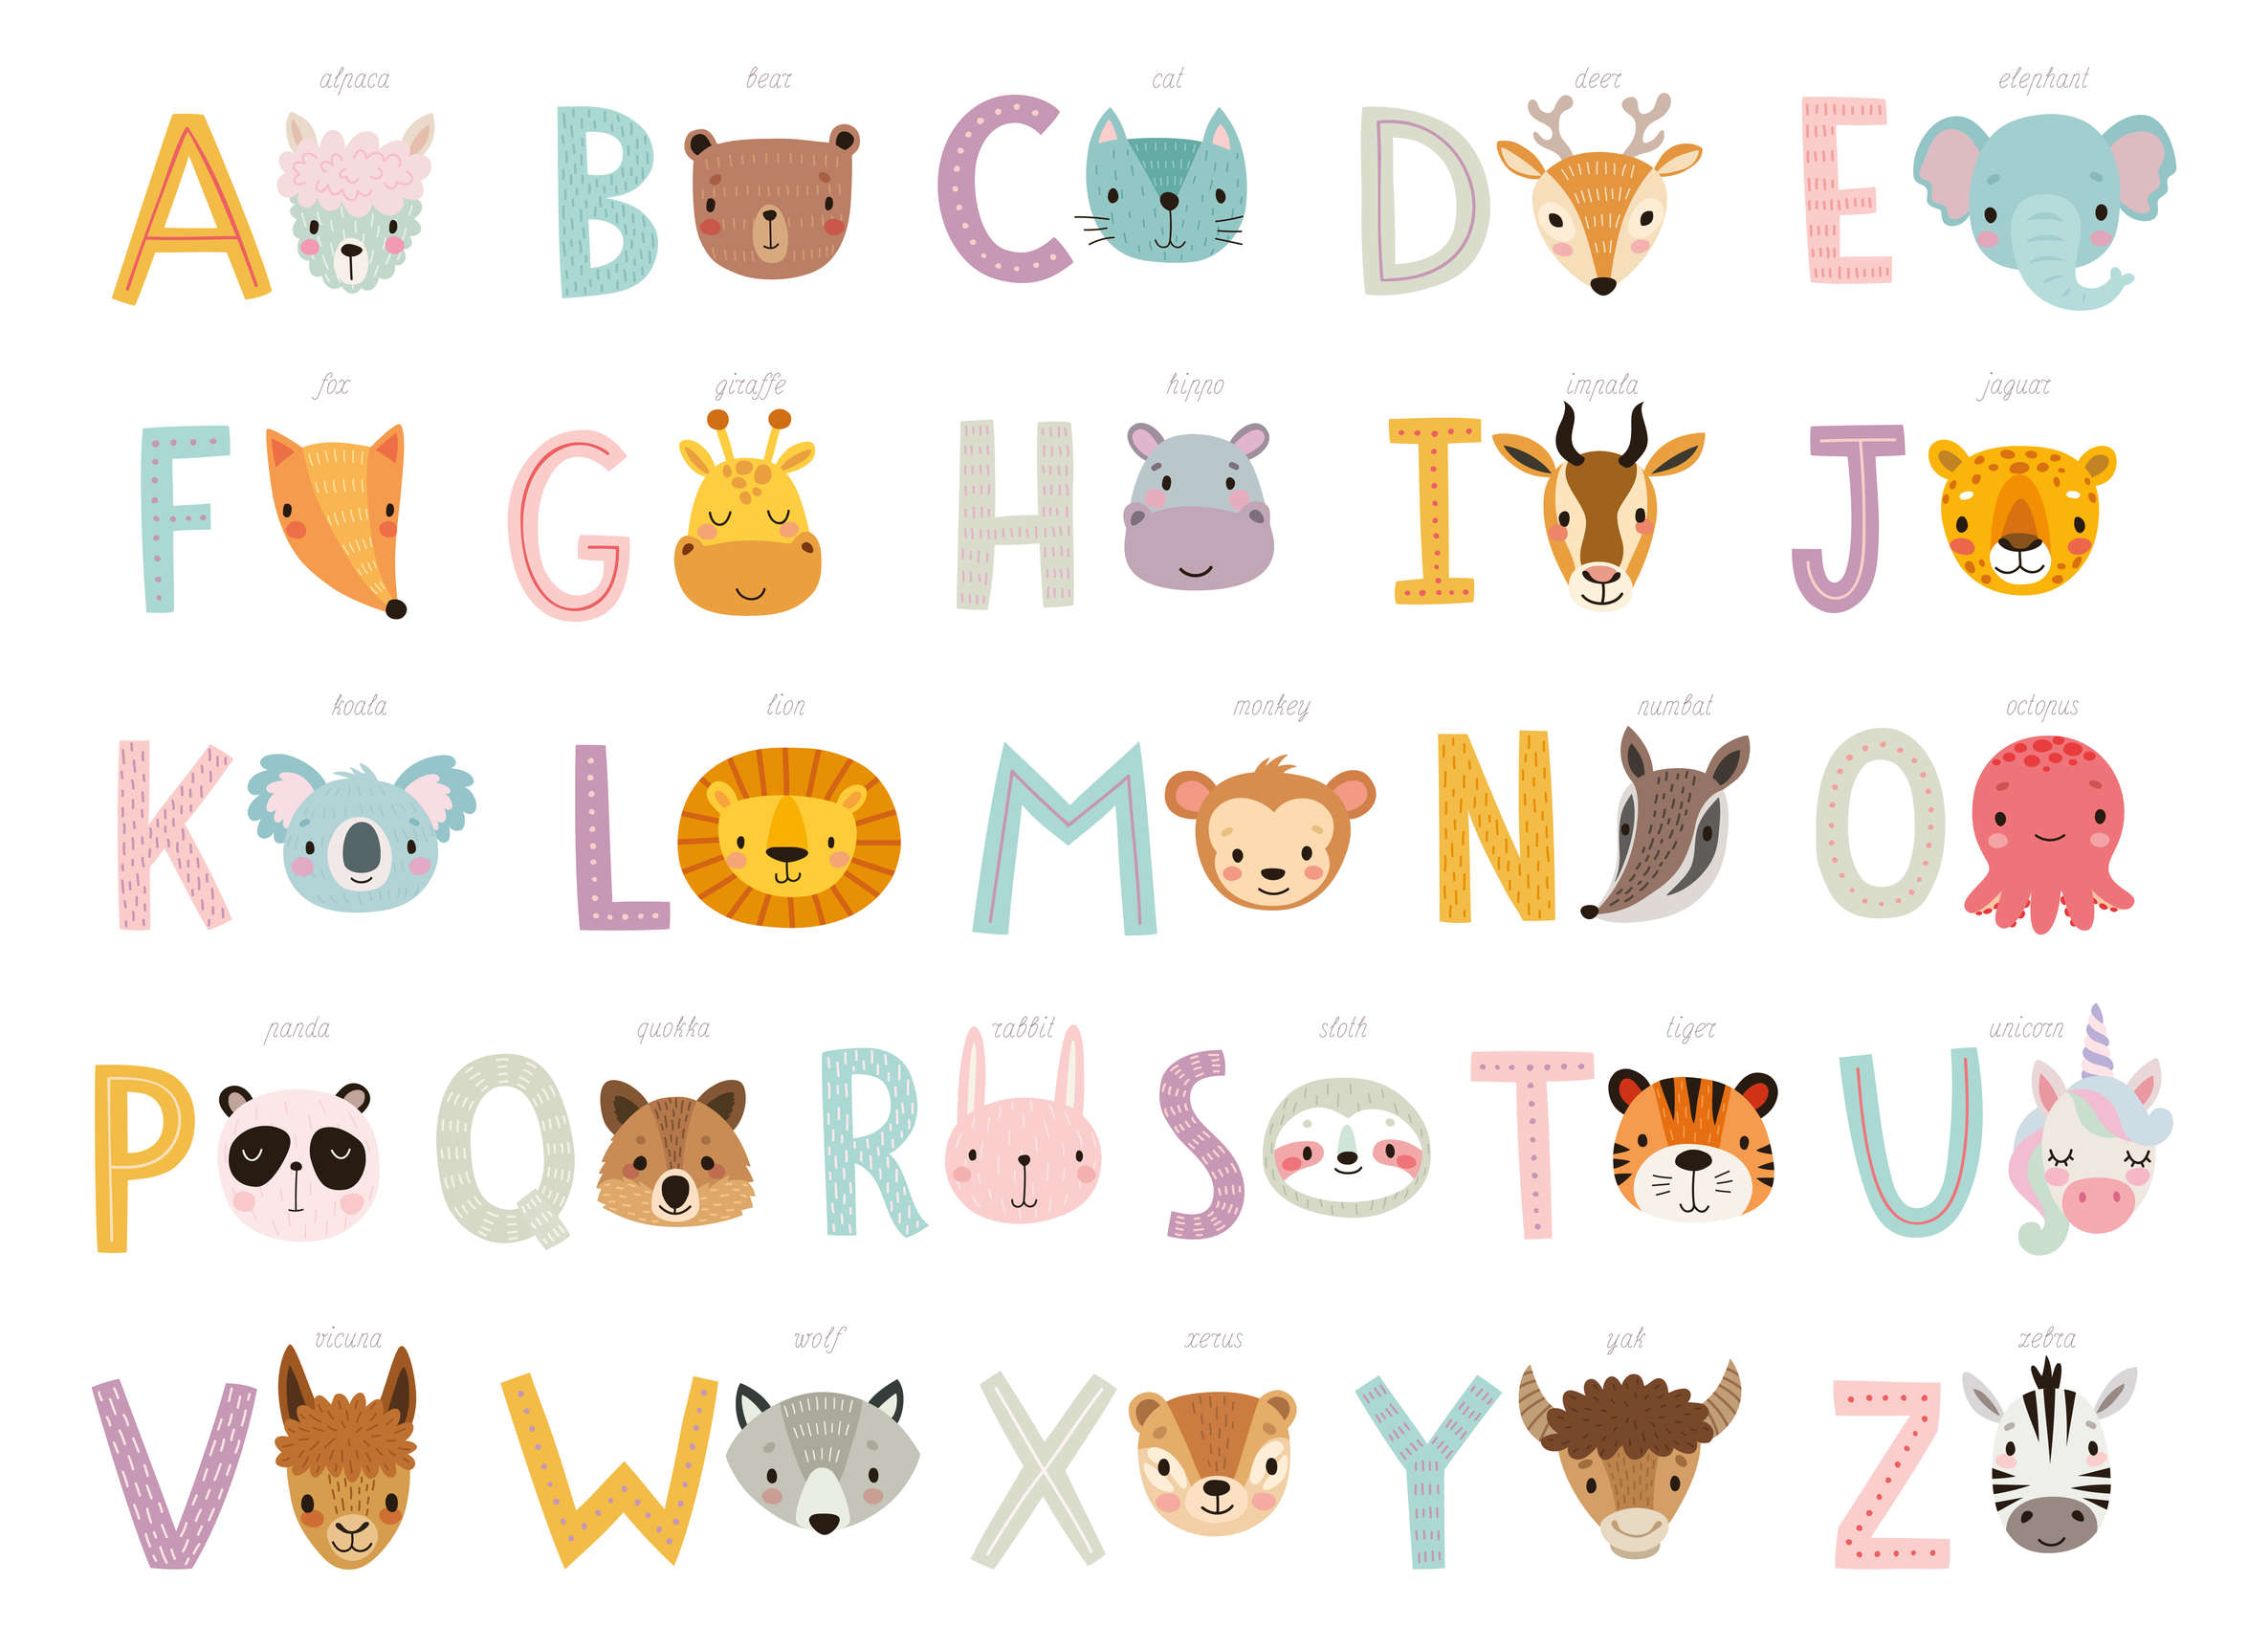             papiers peints à impression numérique ABC avec animaux et noms d'animaux - intissé lisse & mat
        